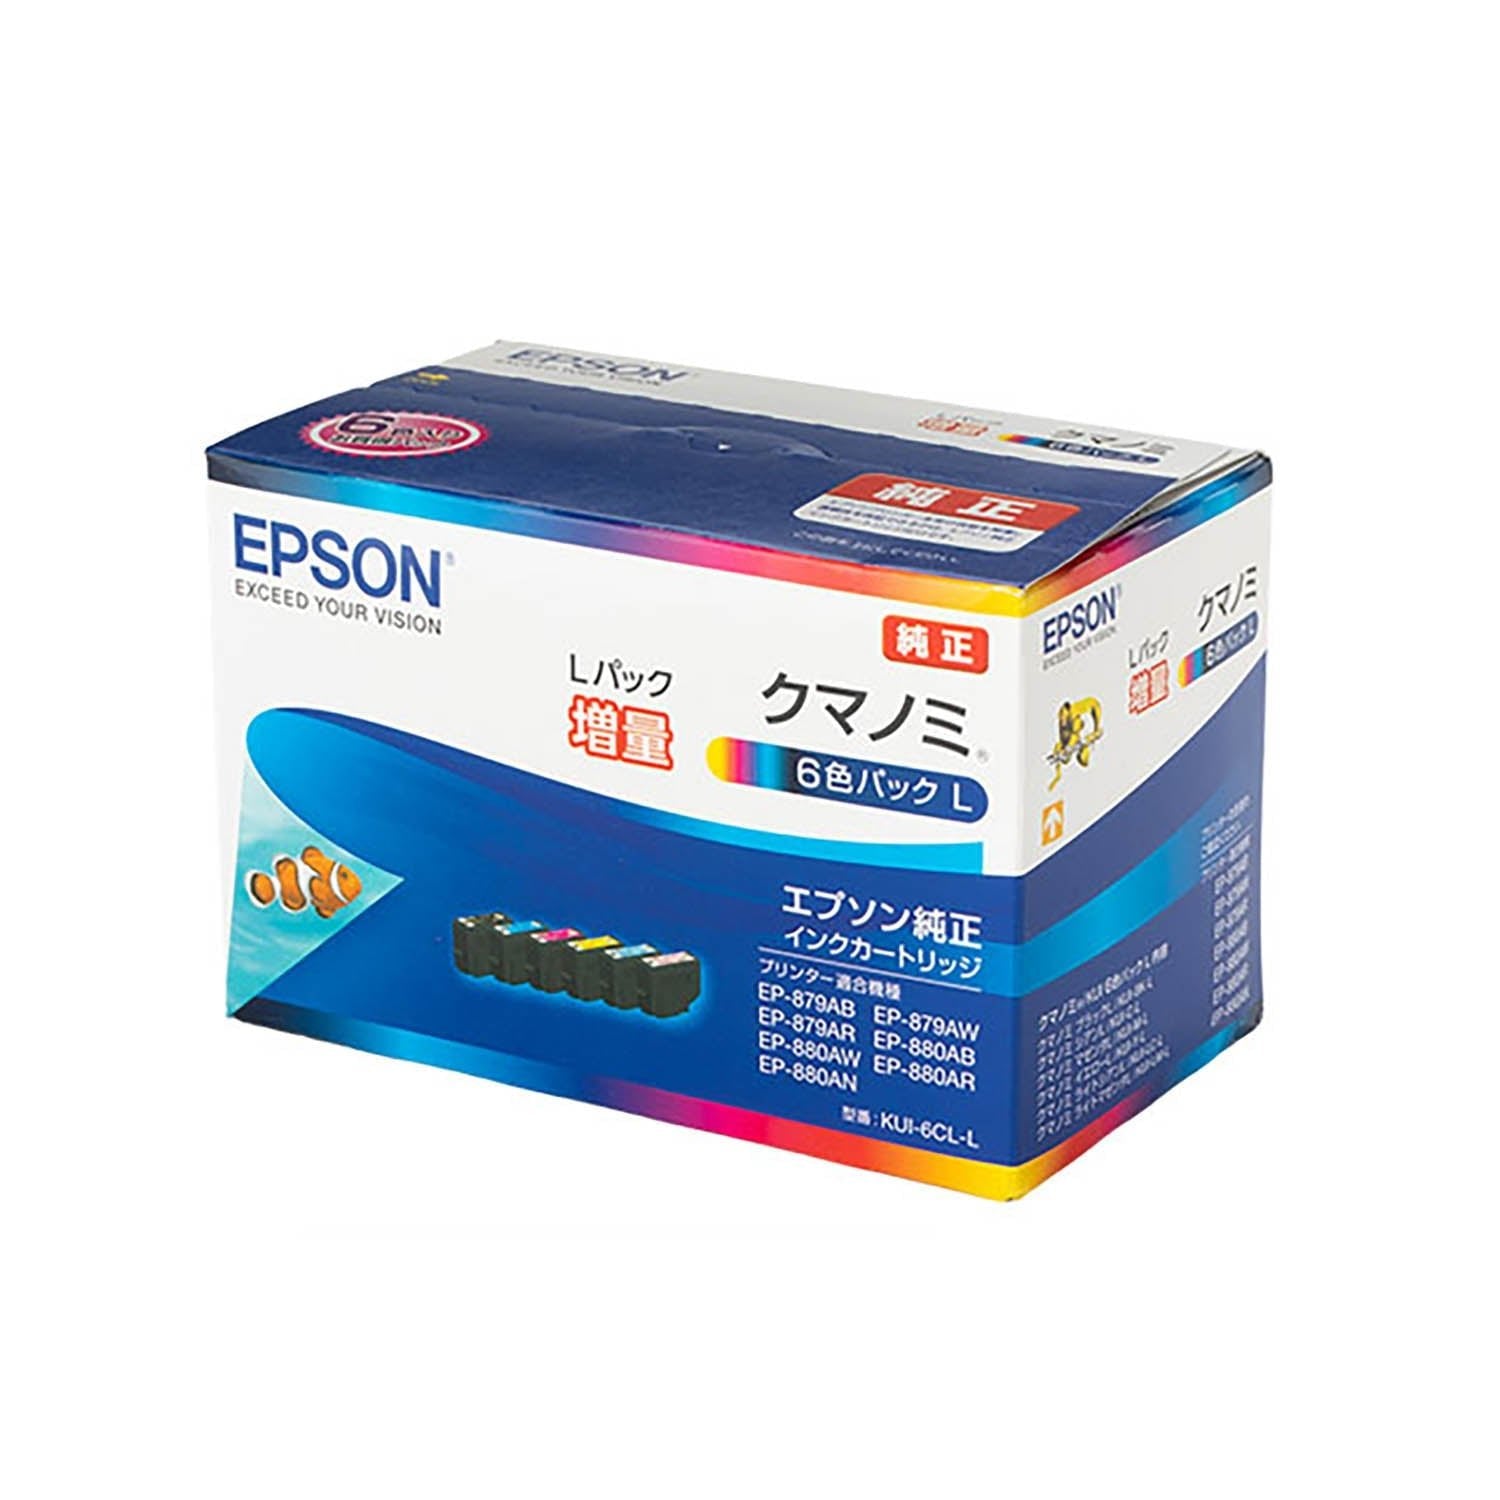 EPSON 純正 インクカートリッジ KUI-6CL-LPC/タブレット